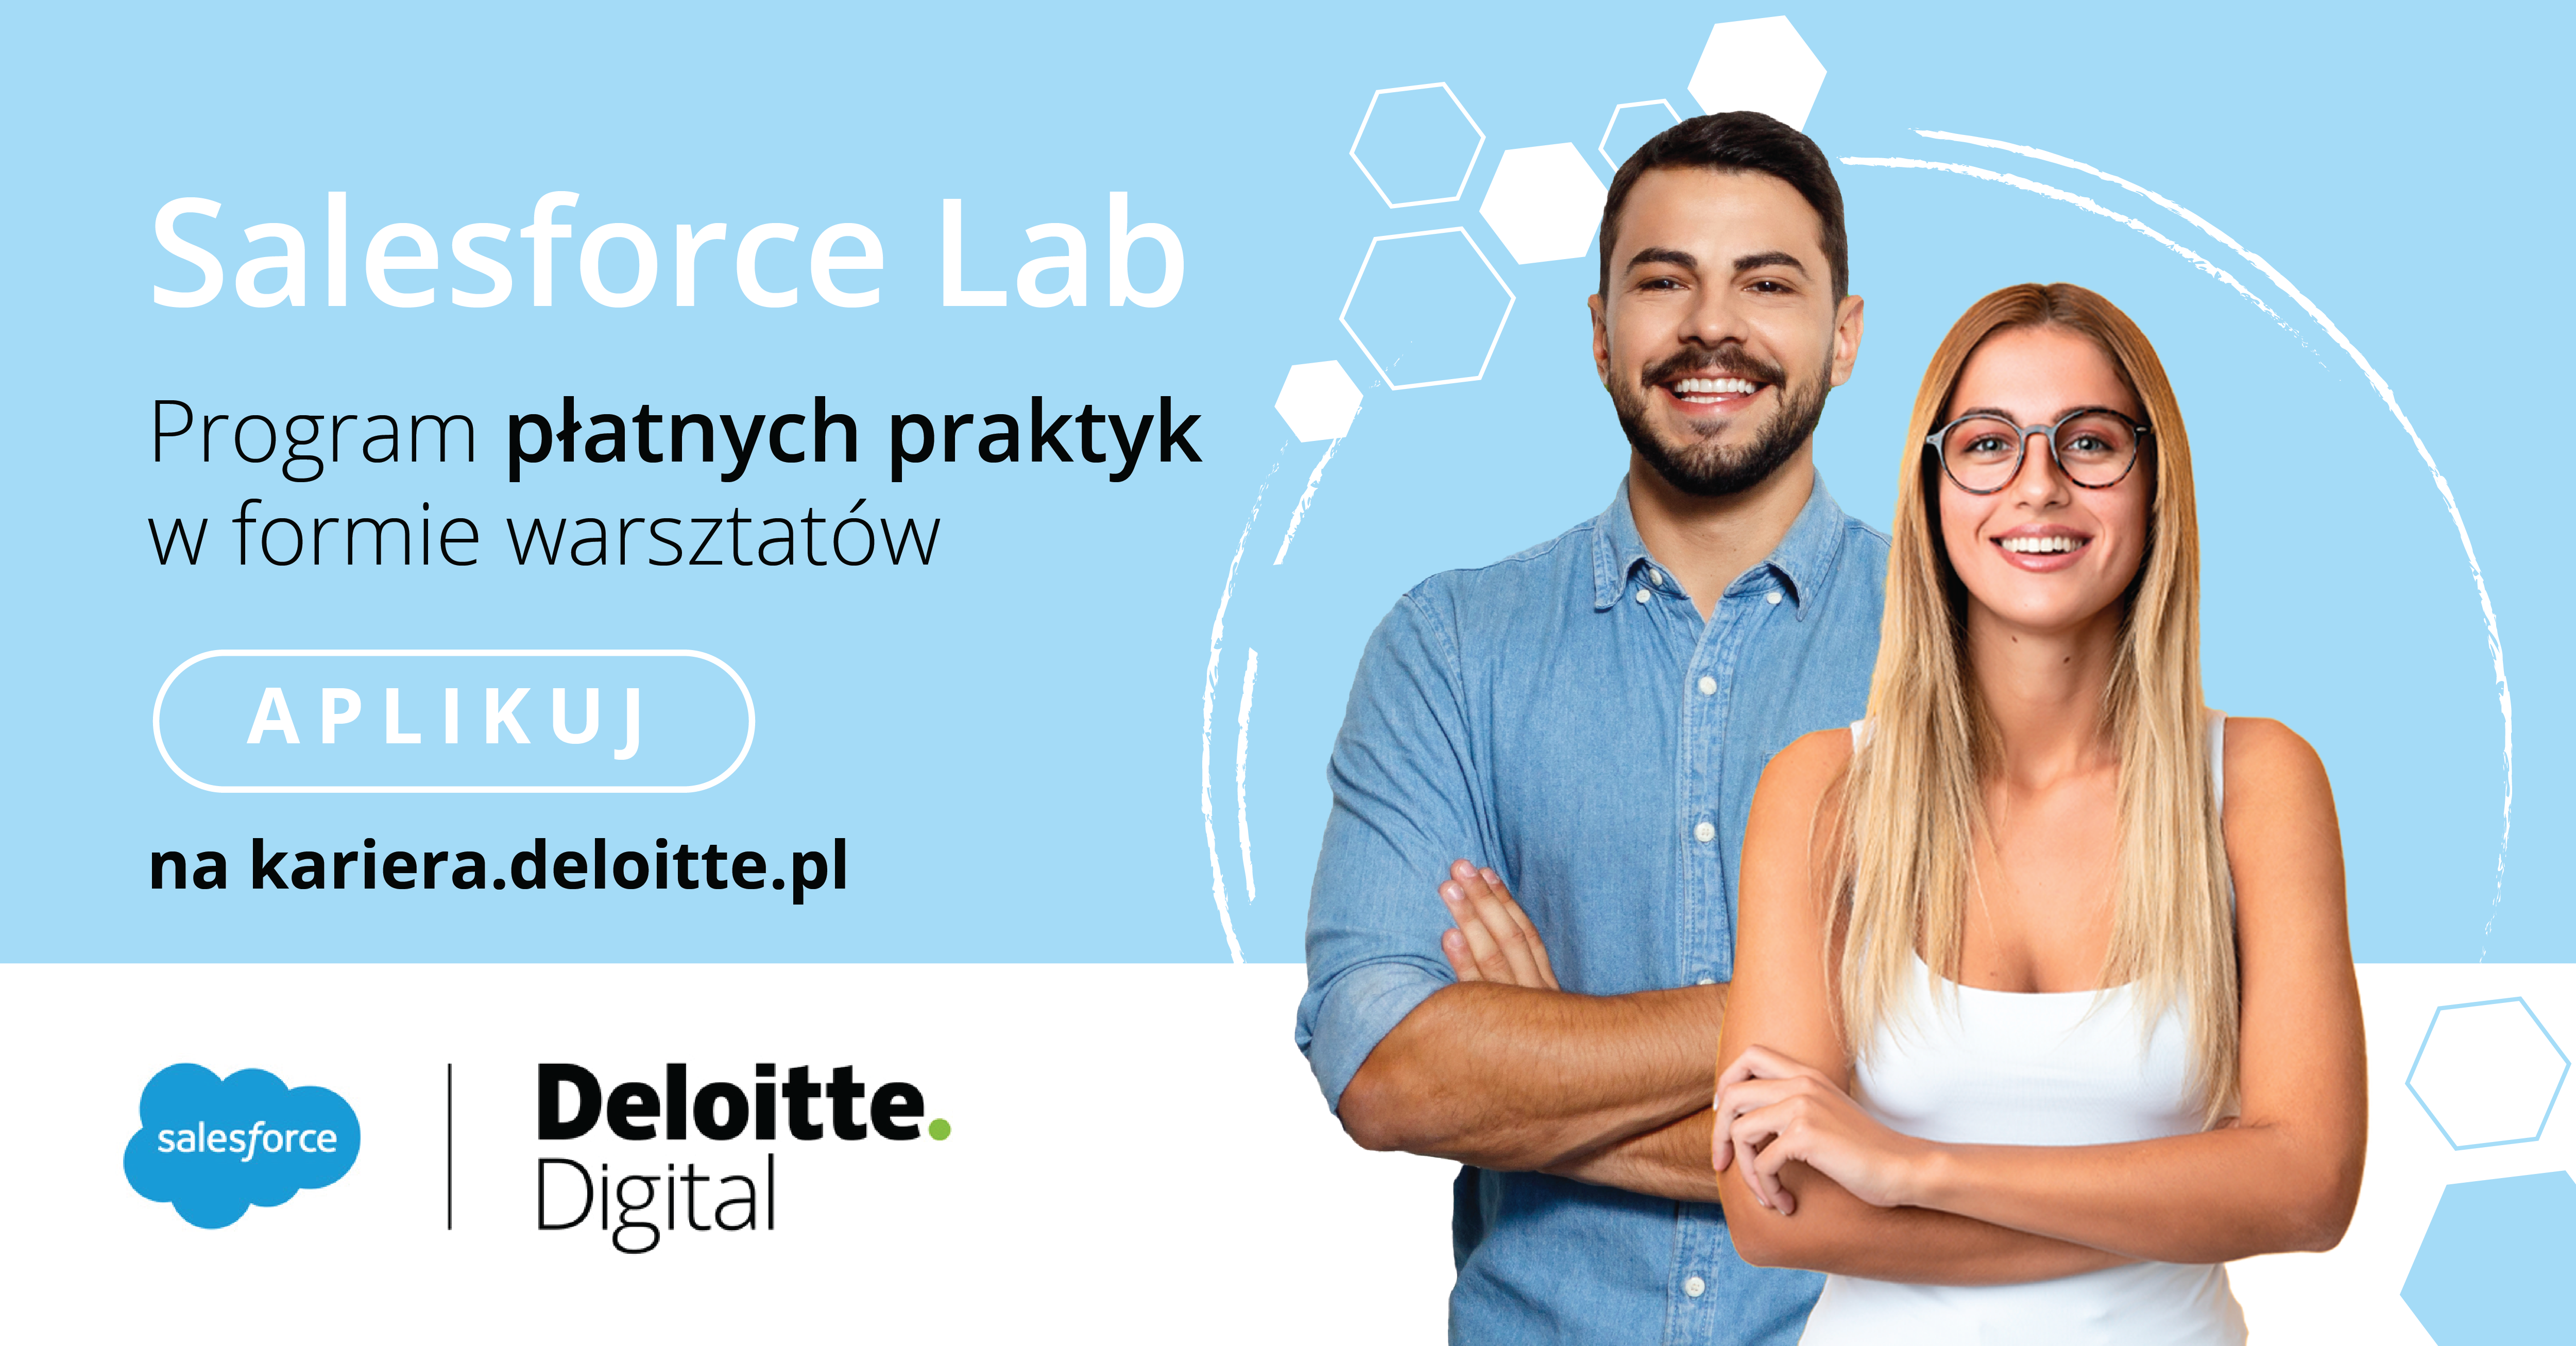 salesforce-lab-by-deloitte-digital